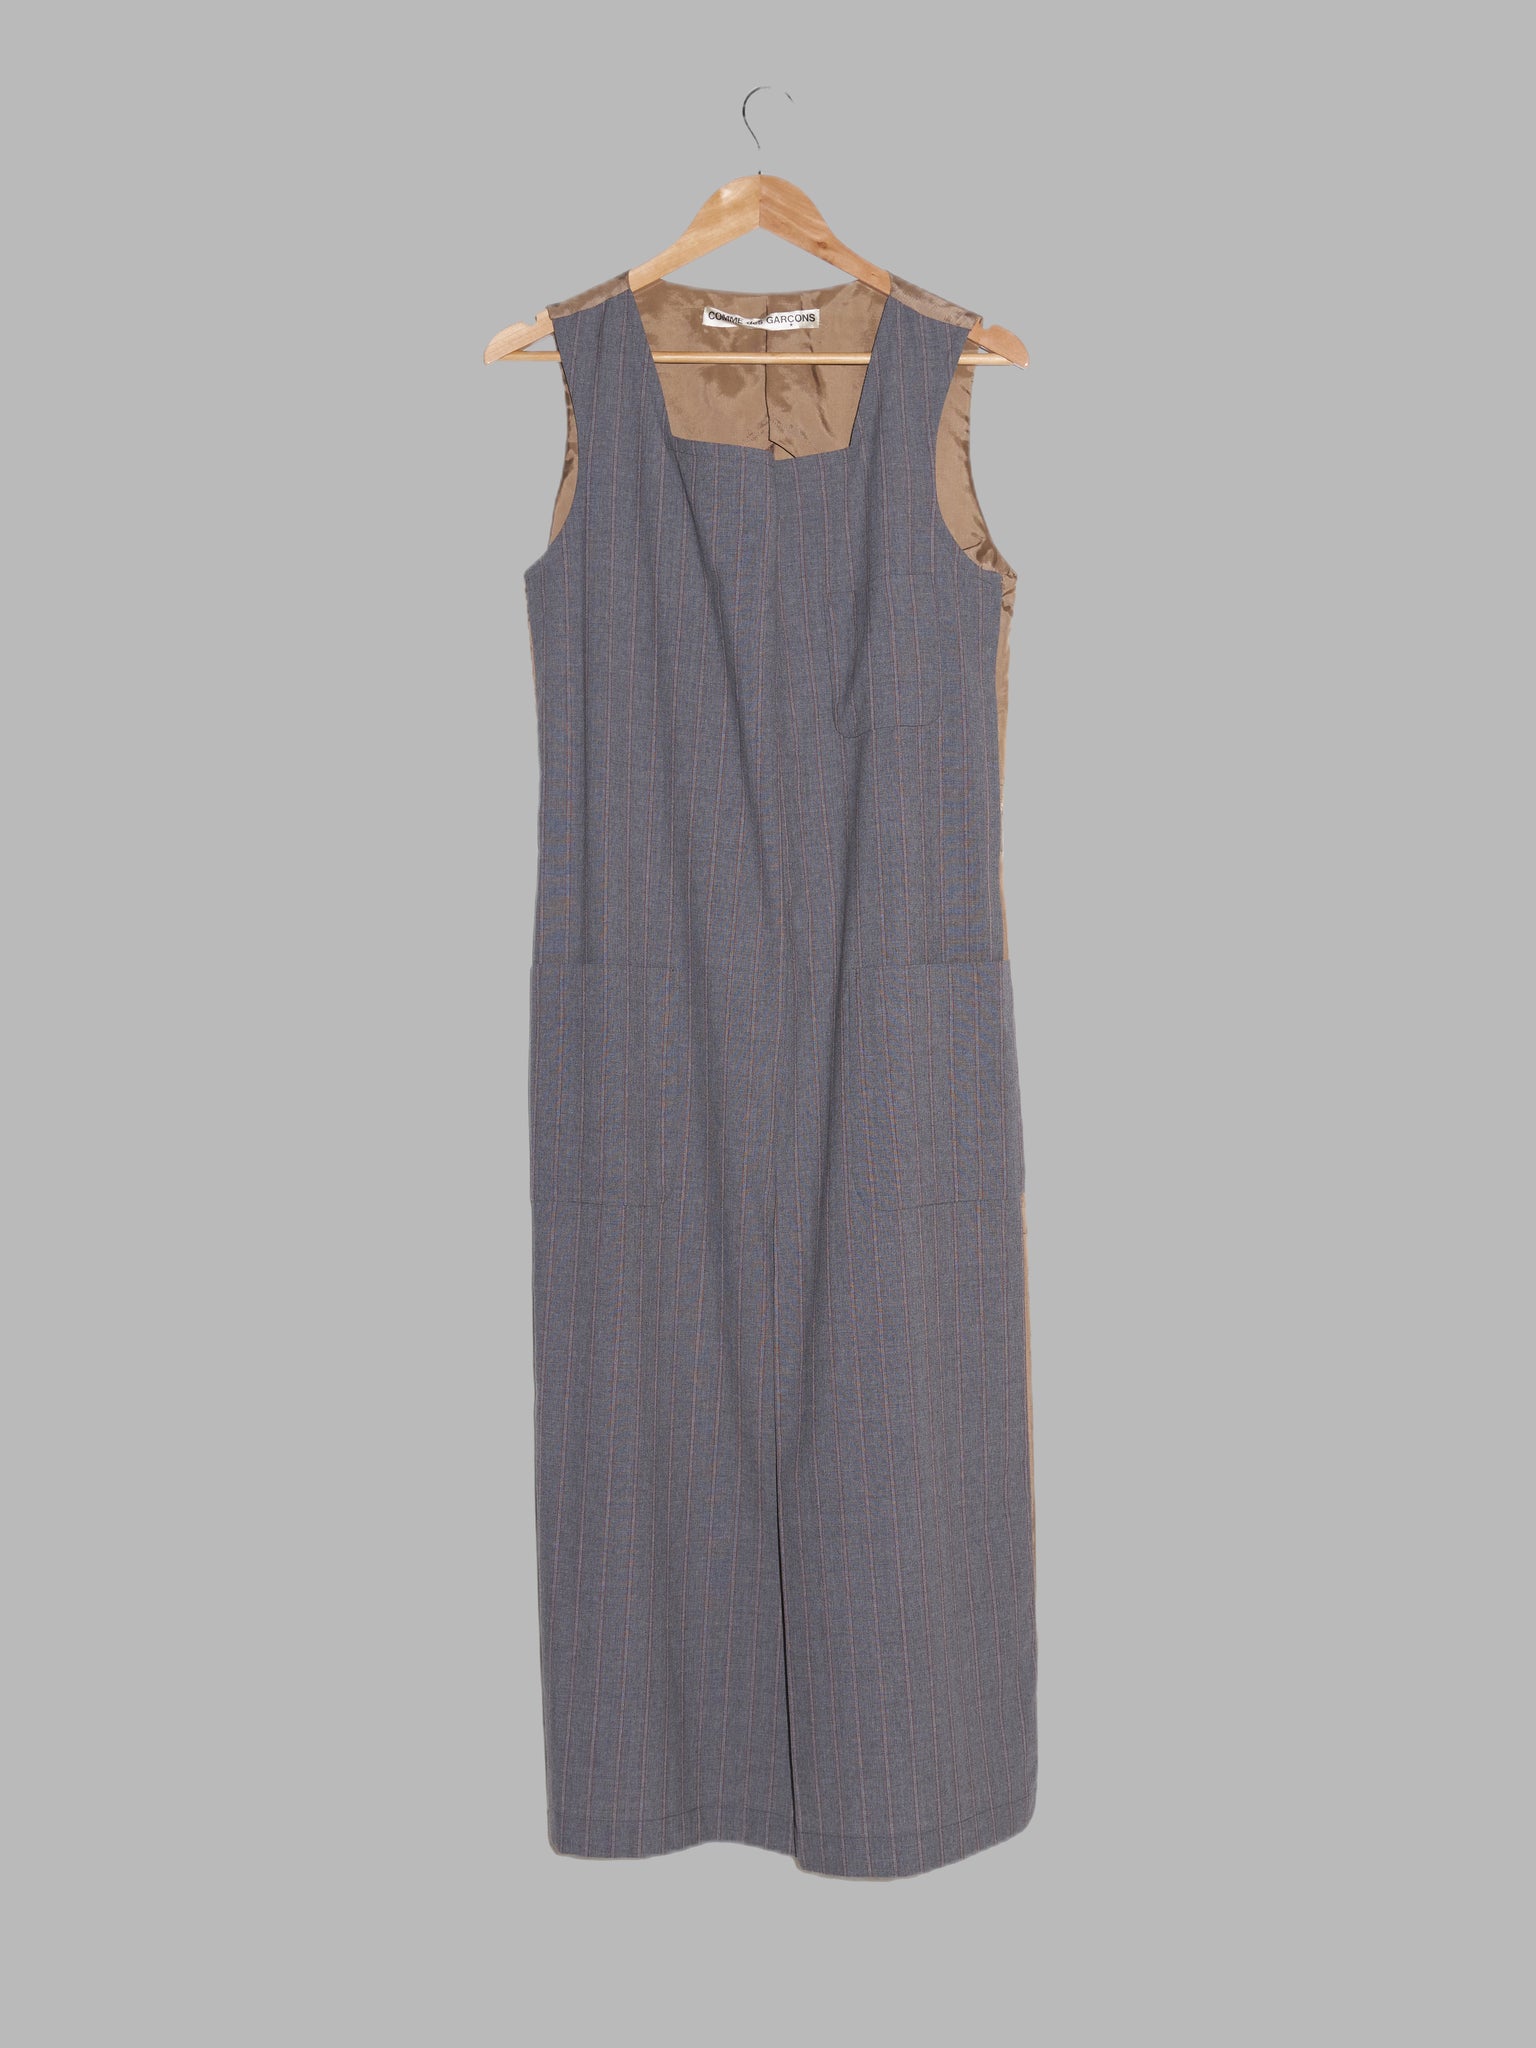 Comme des Garcons SS1995 grey wool front brown satin back full length vest dress